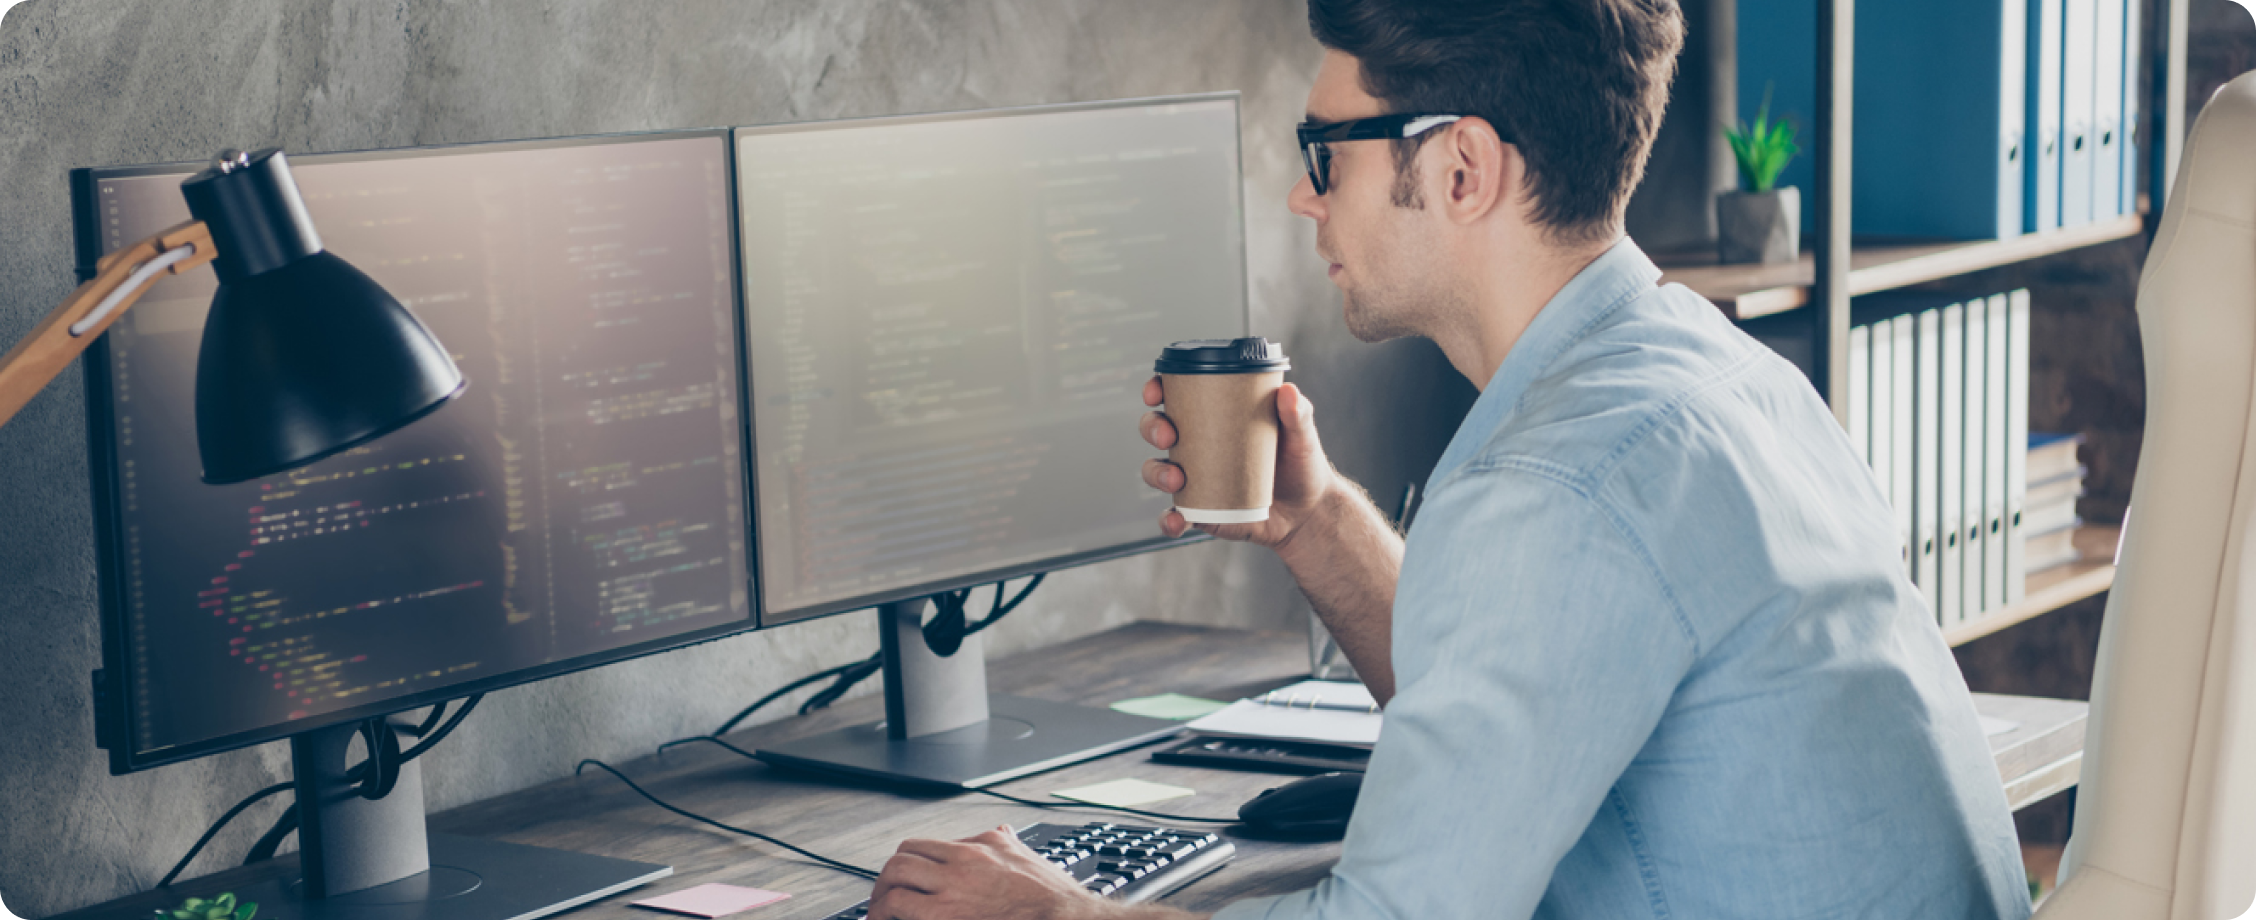 Un homme avec une chemise bleue travaille sur son ordinateur de bureau et tient un gobelet à café.